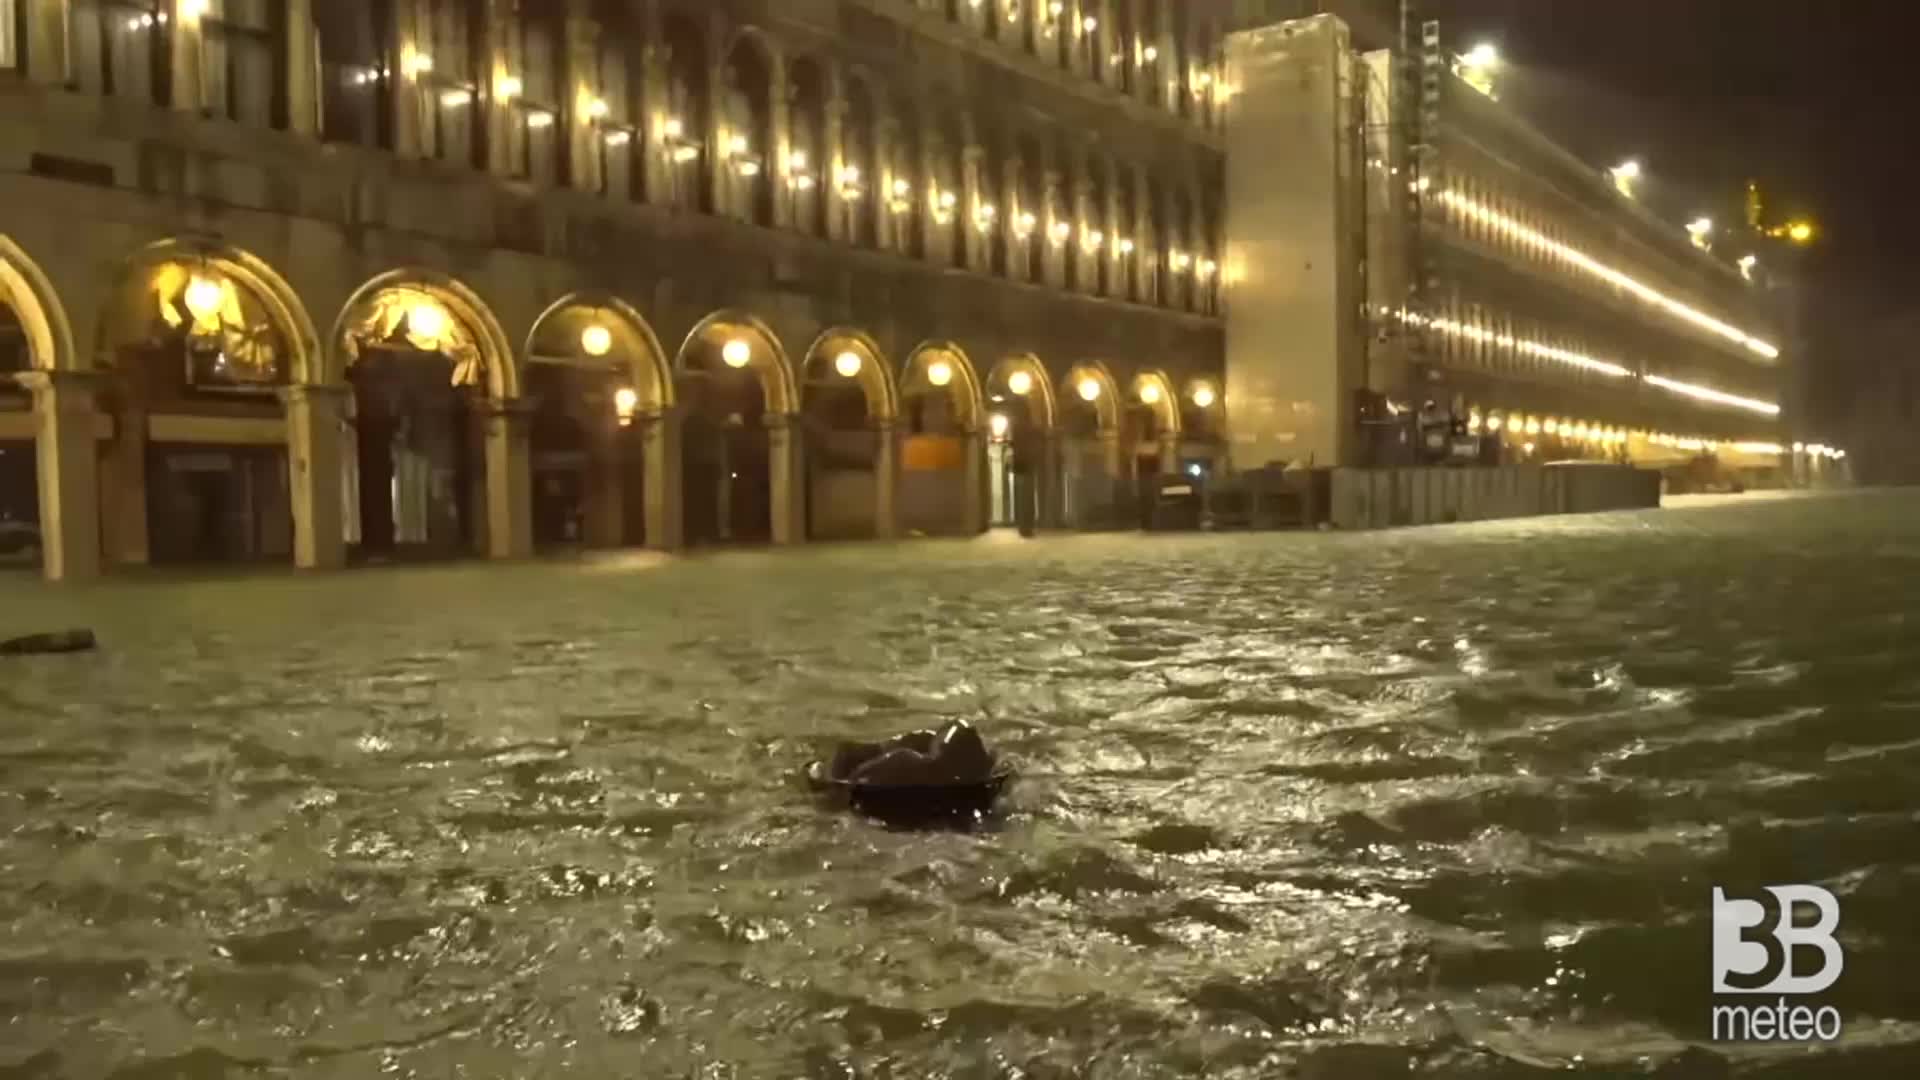 Cronaca meteo maltempo acqua alta storica a Venezia, sfiorati i 190cm con tempesta di scirocco 